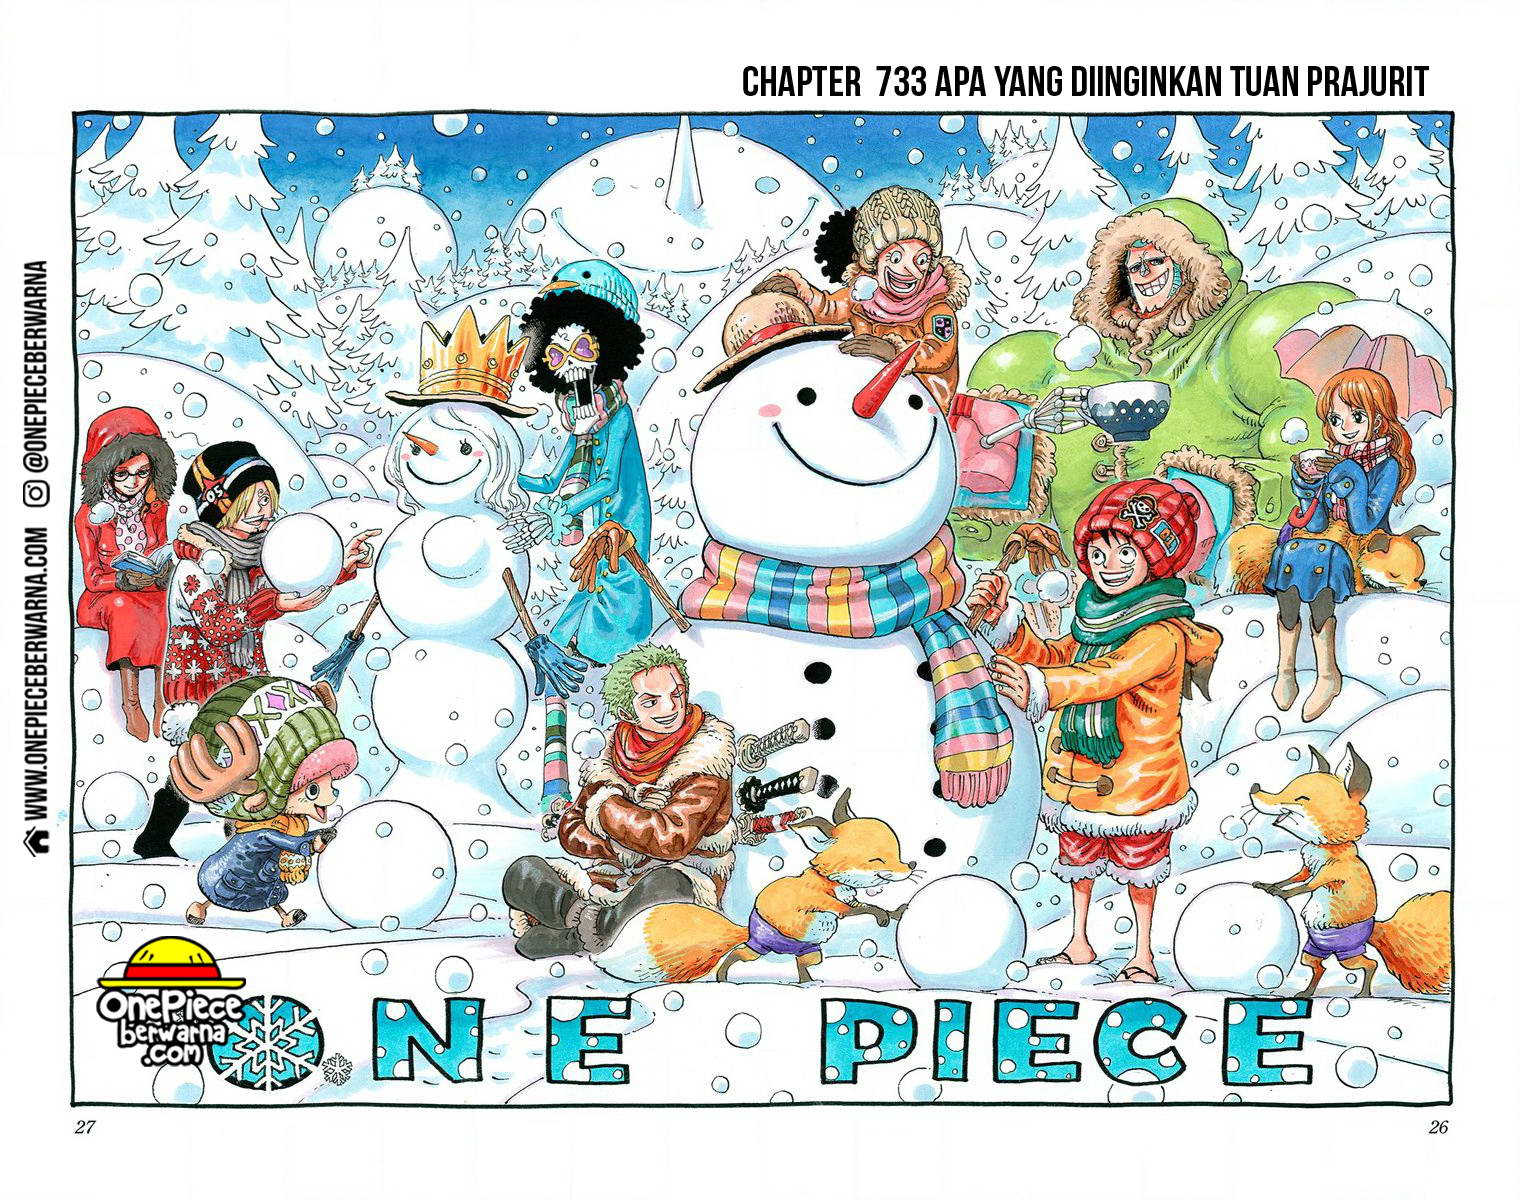 One Piece Berwarna Chapter 733